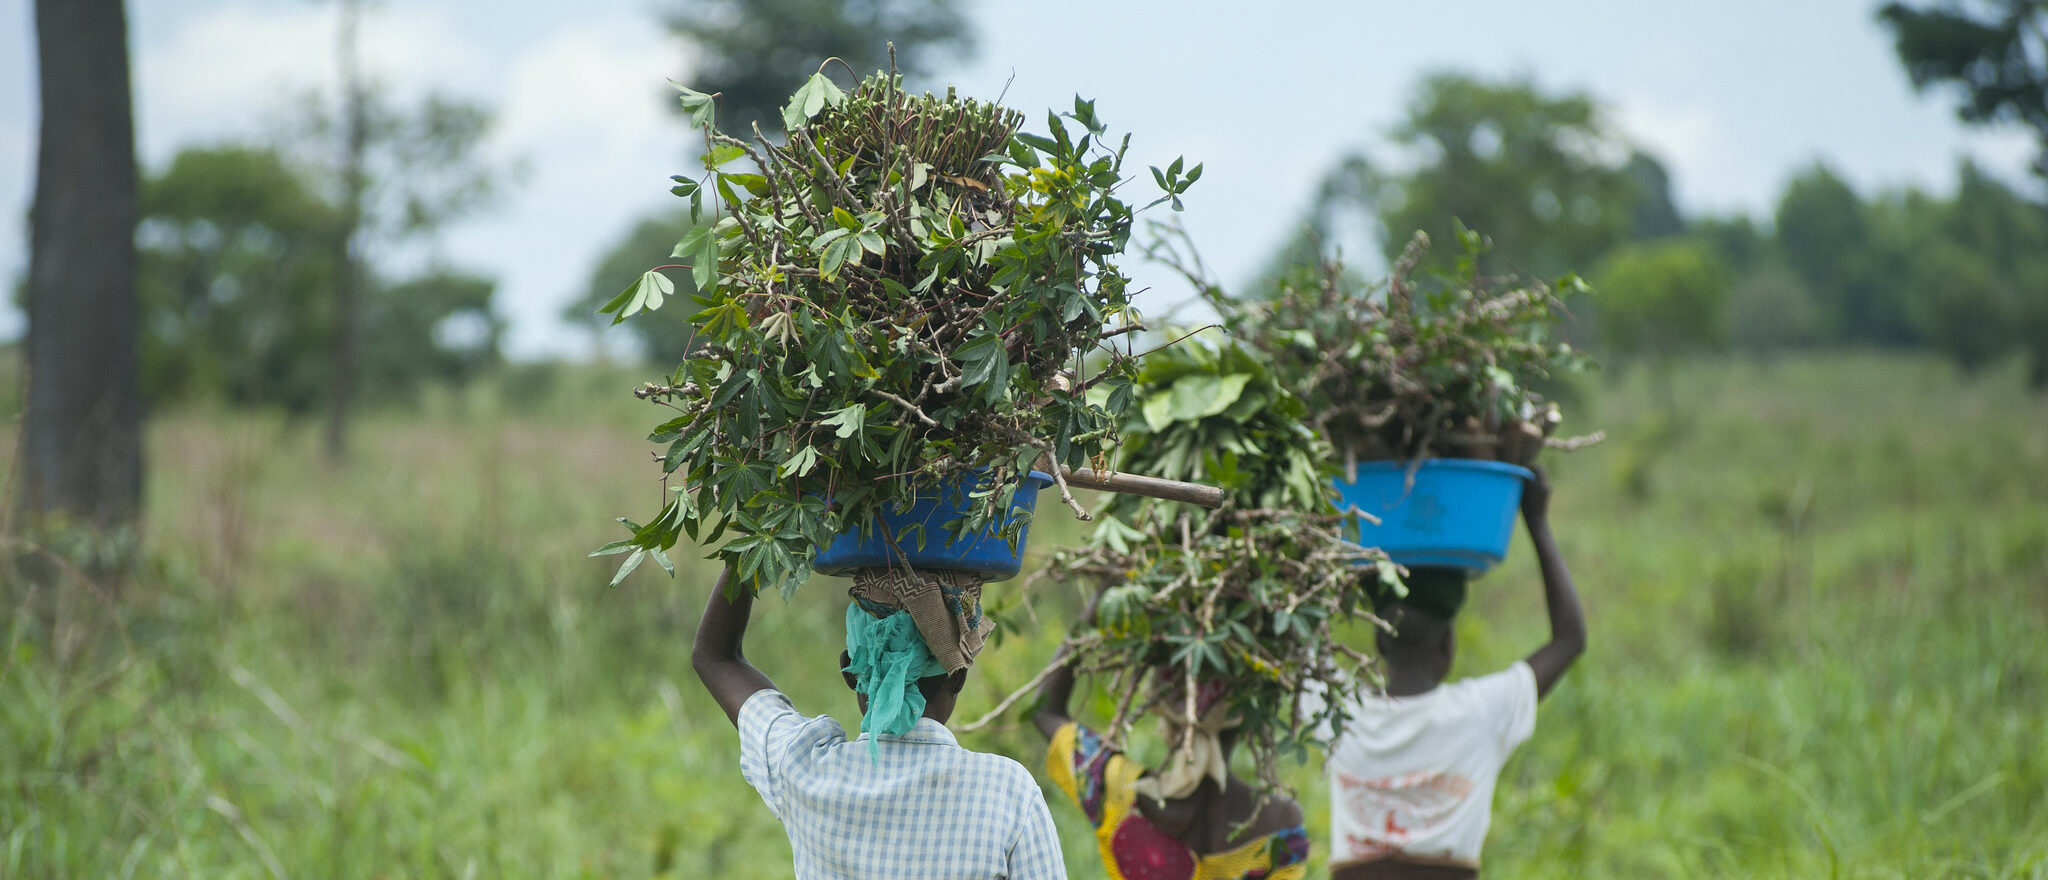 Pour les locuteurs de tshiluba, une langue de la République démocratique du Congo, la prononciation française est compliquée | photo illustrative © EU Civil Protection and Humanitarian Aid/Flickr/CC BY-NC-ND 2.0